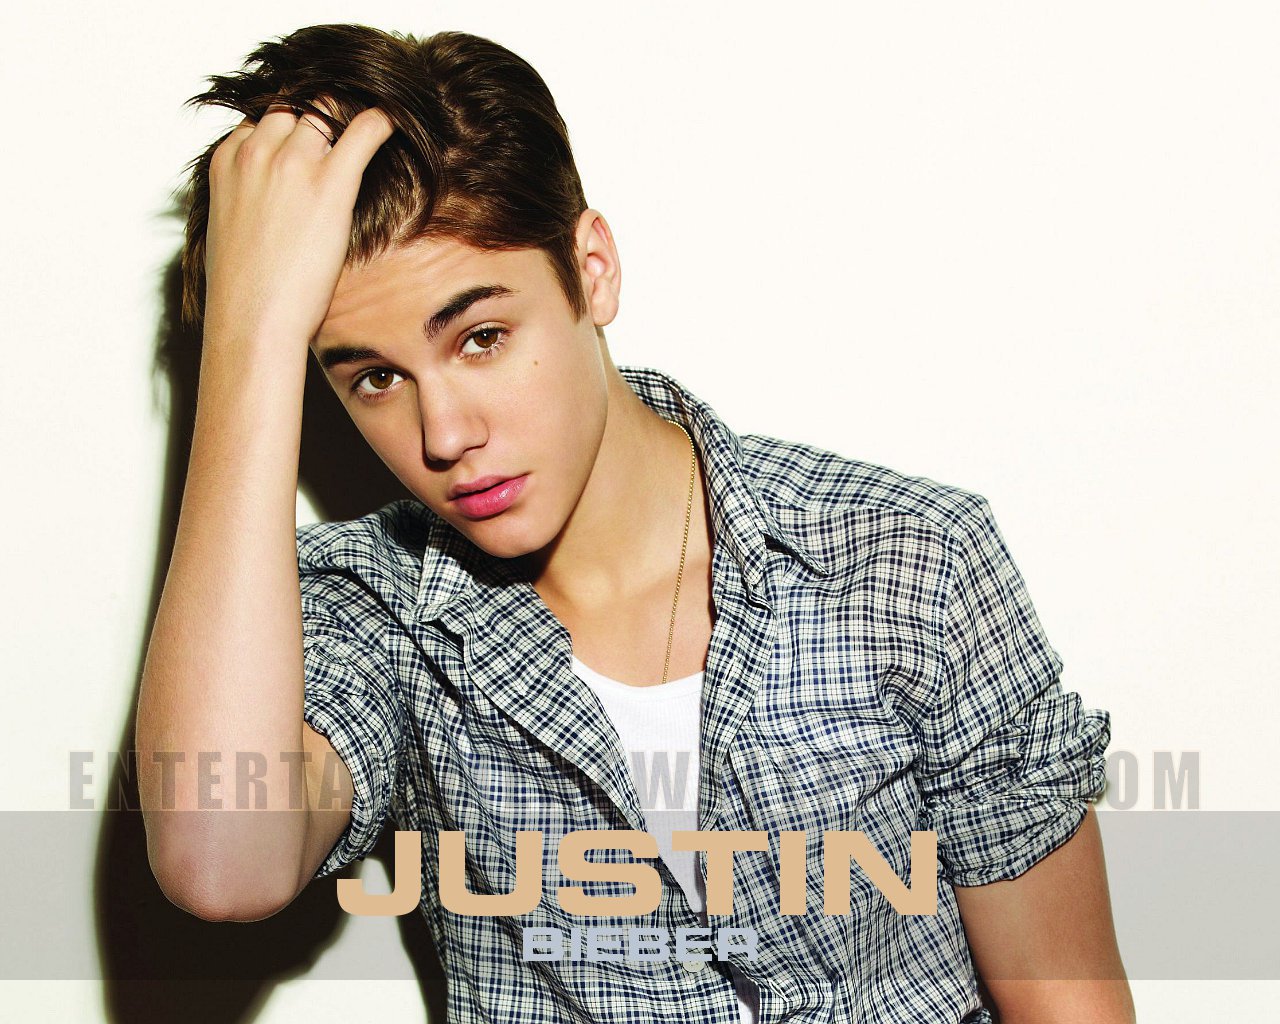 Justin Bieber - Justin Bieber Hd 4k - 1280x1024 Wallpaper 